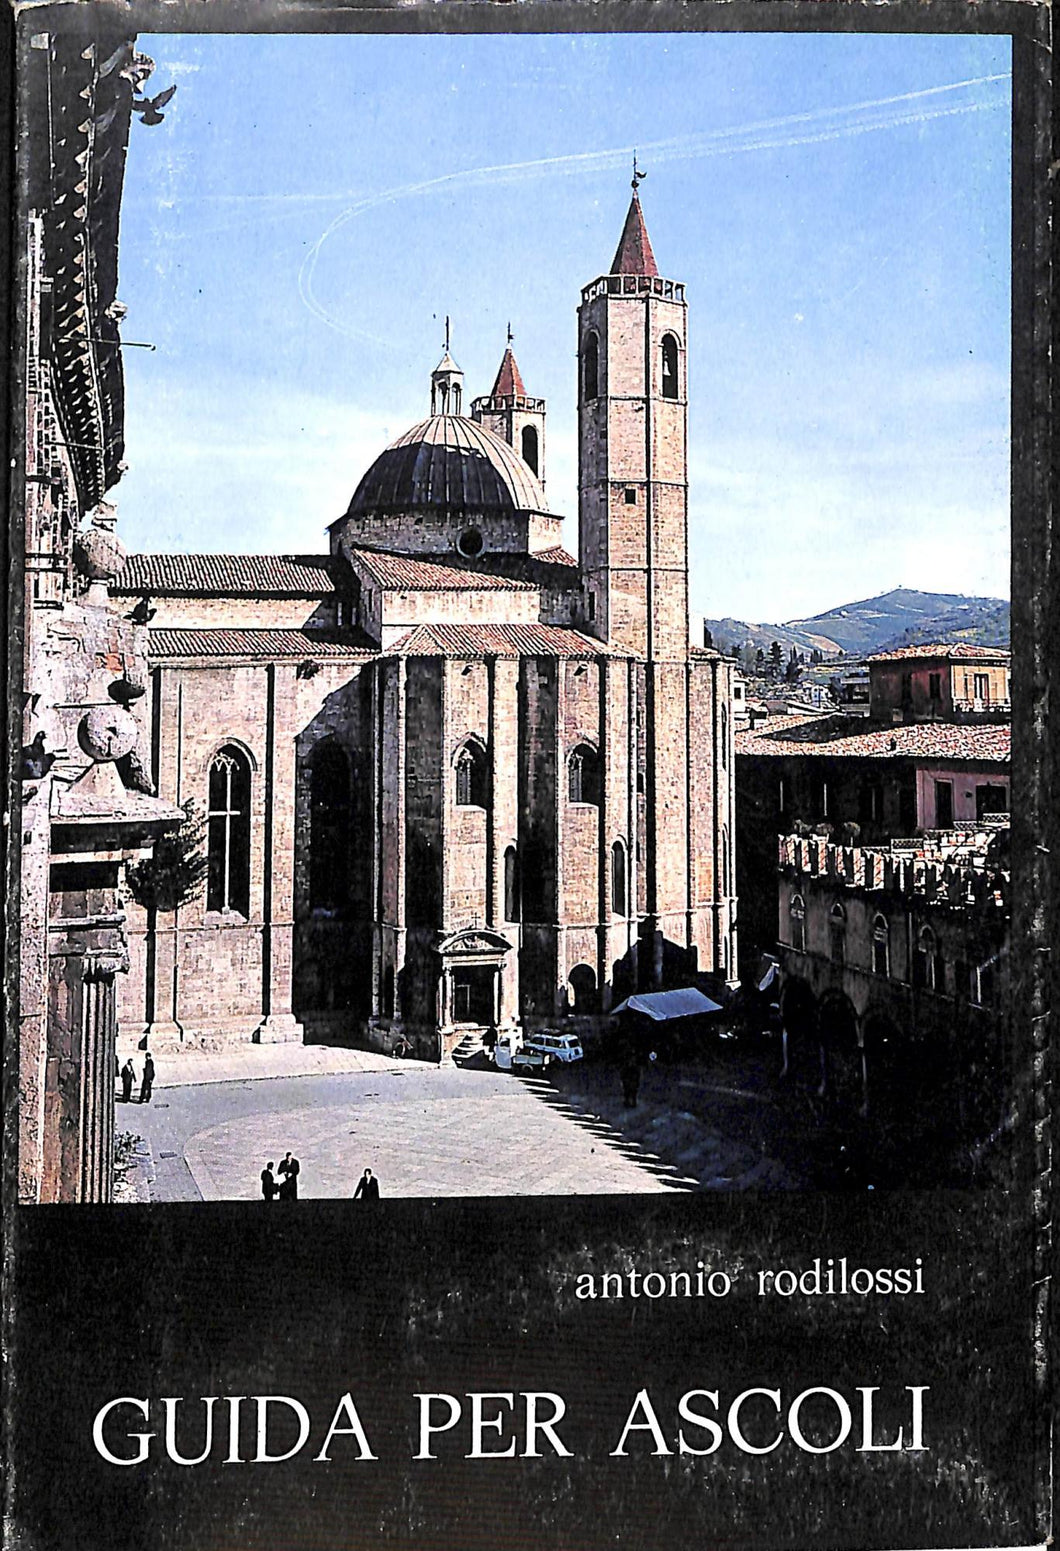 (Marche) Guida per Ascoli / Antonio Rodilossi 1a ed.